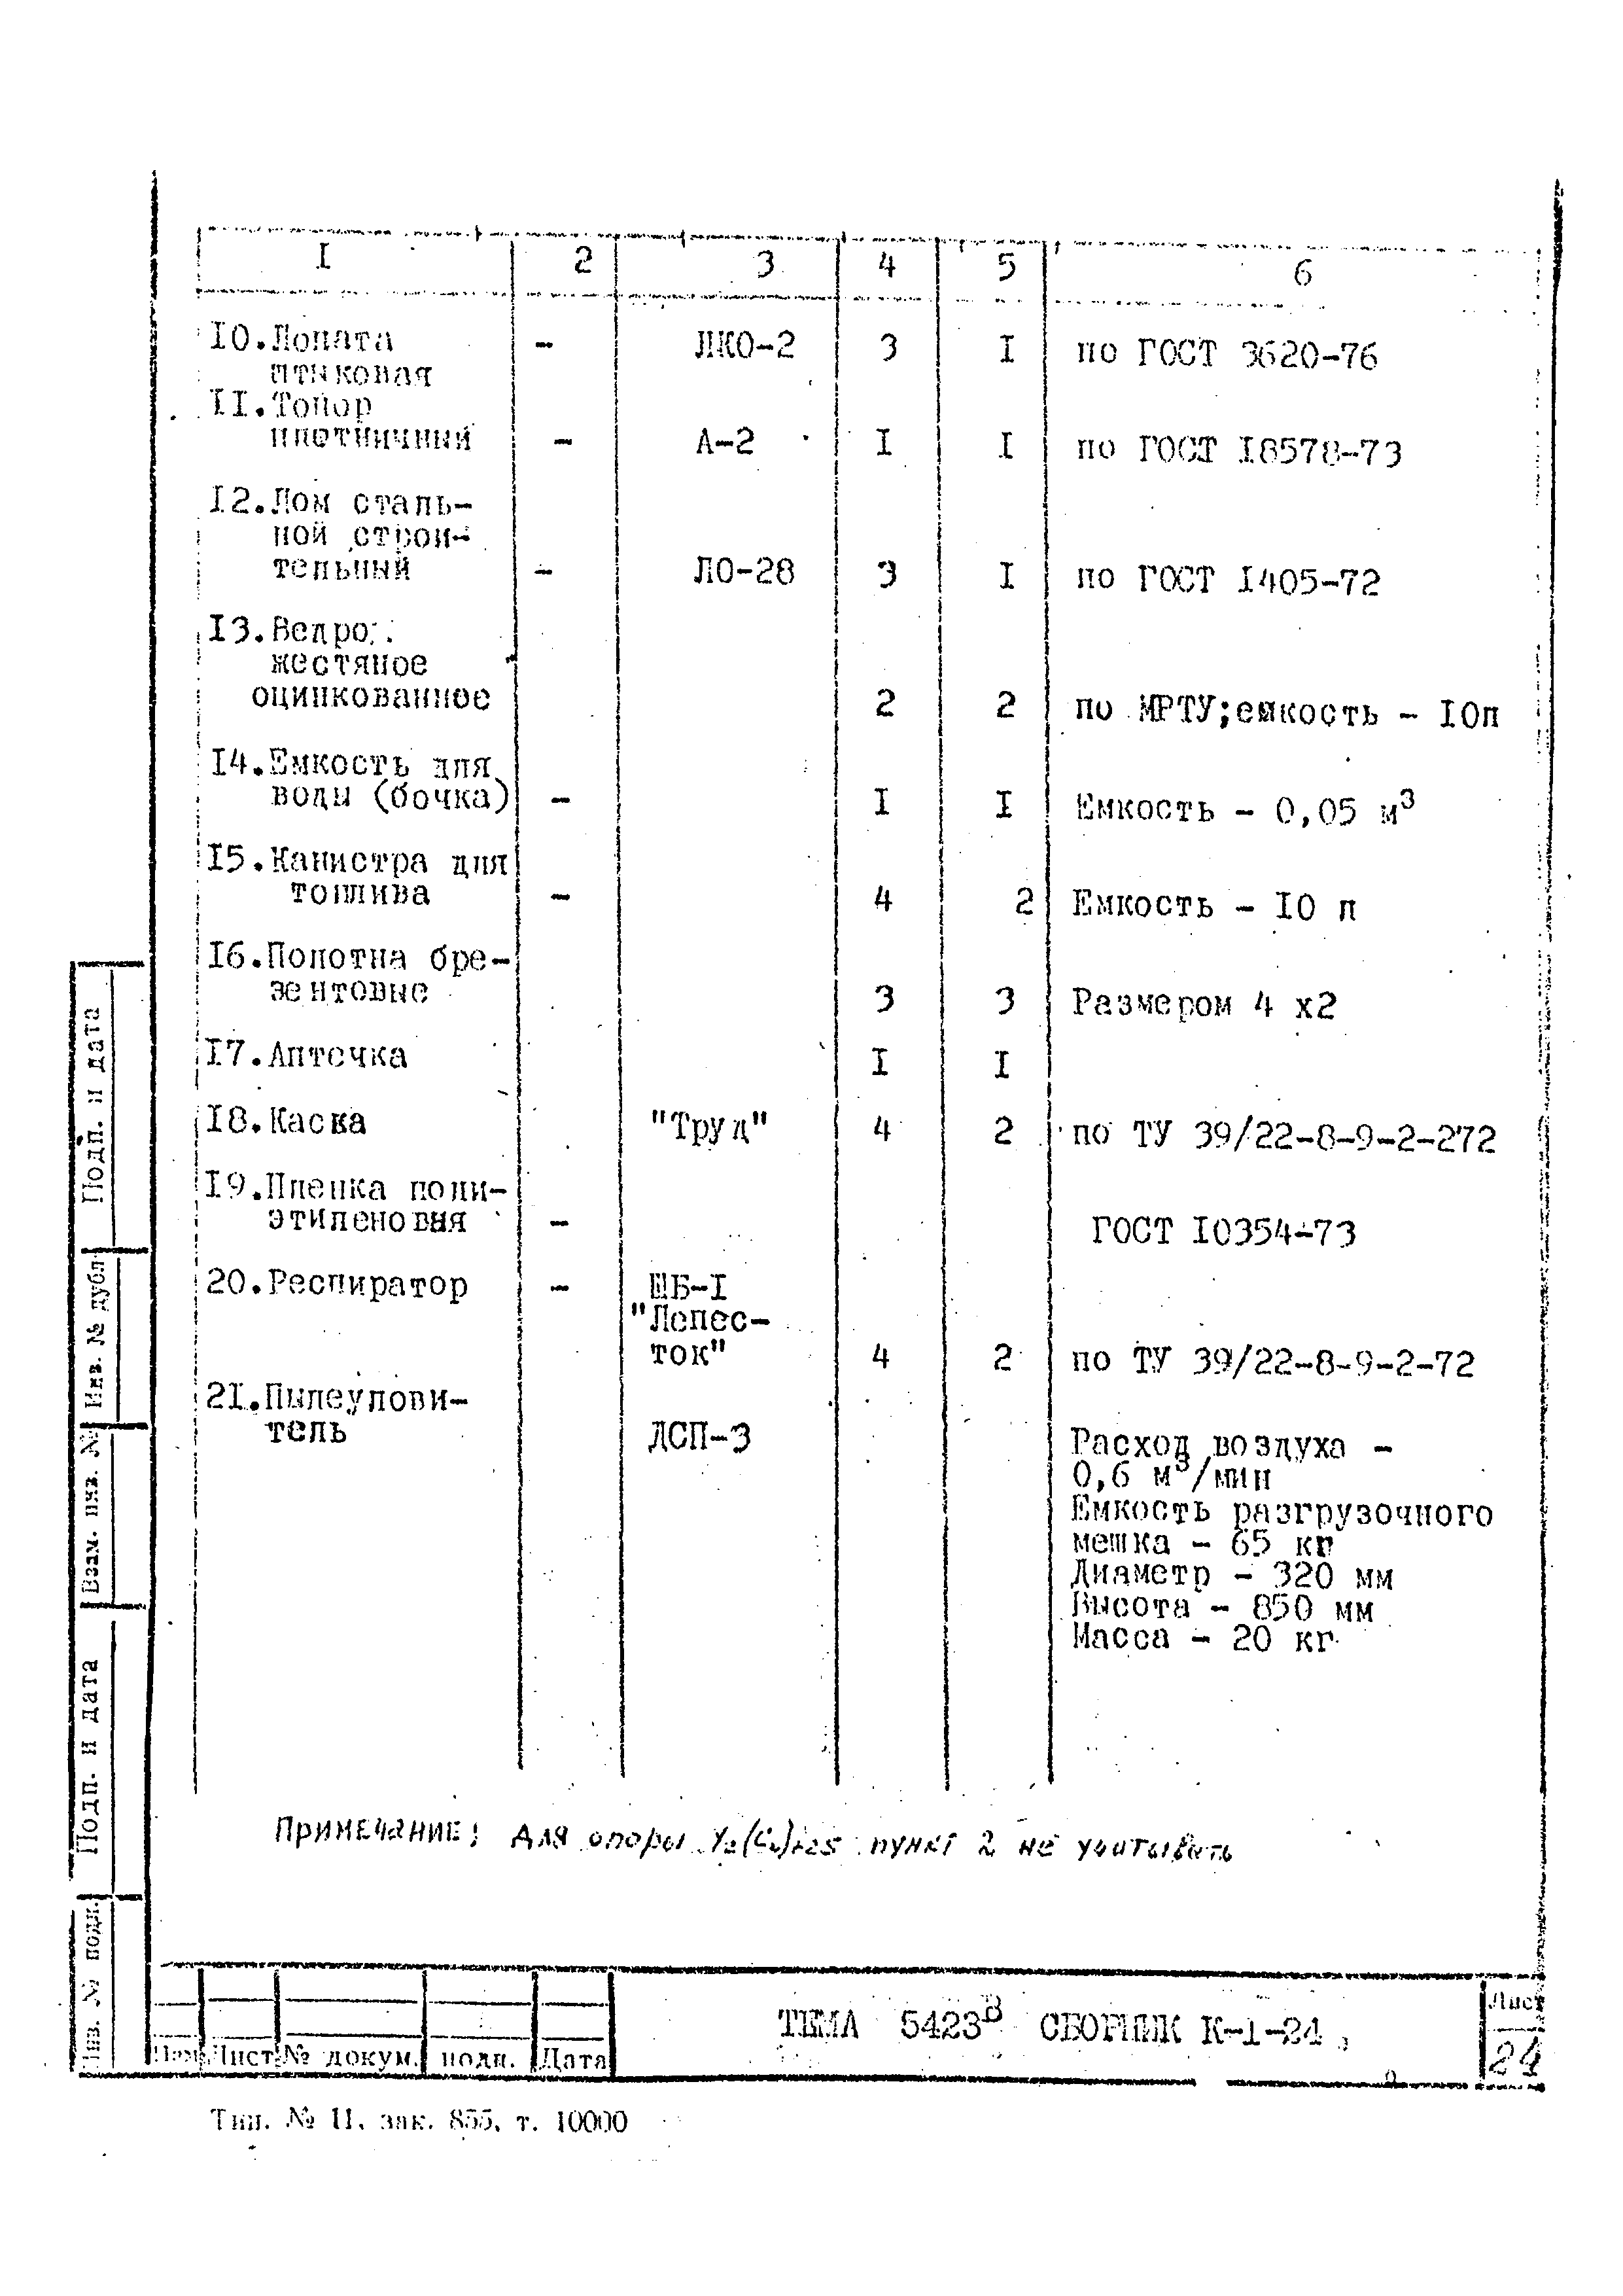 Технологическая карта К-1-24-7